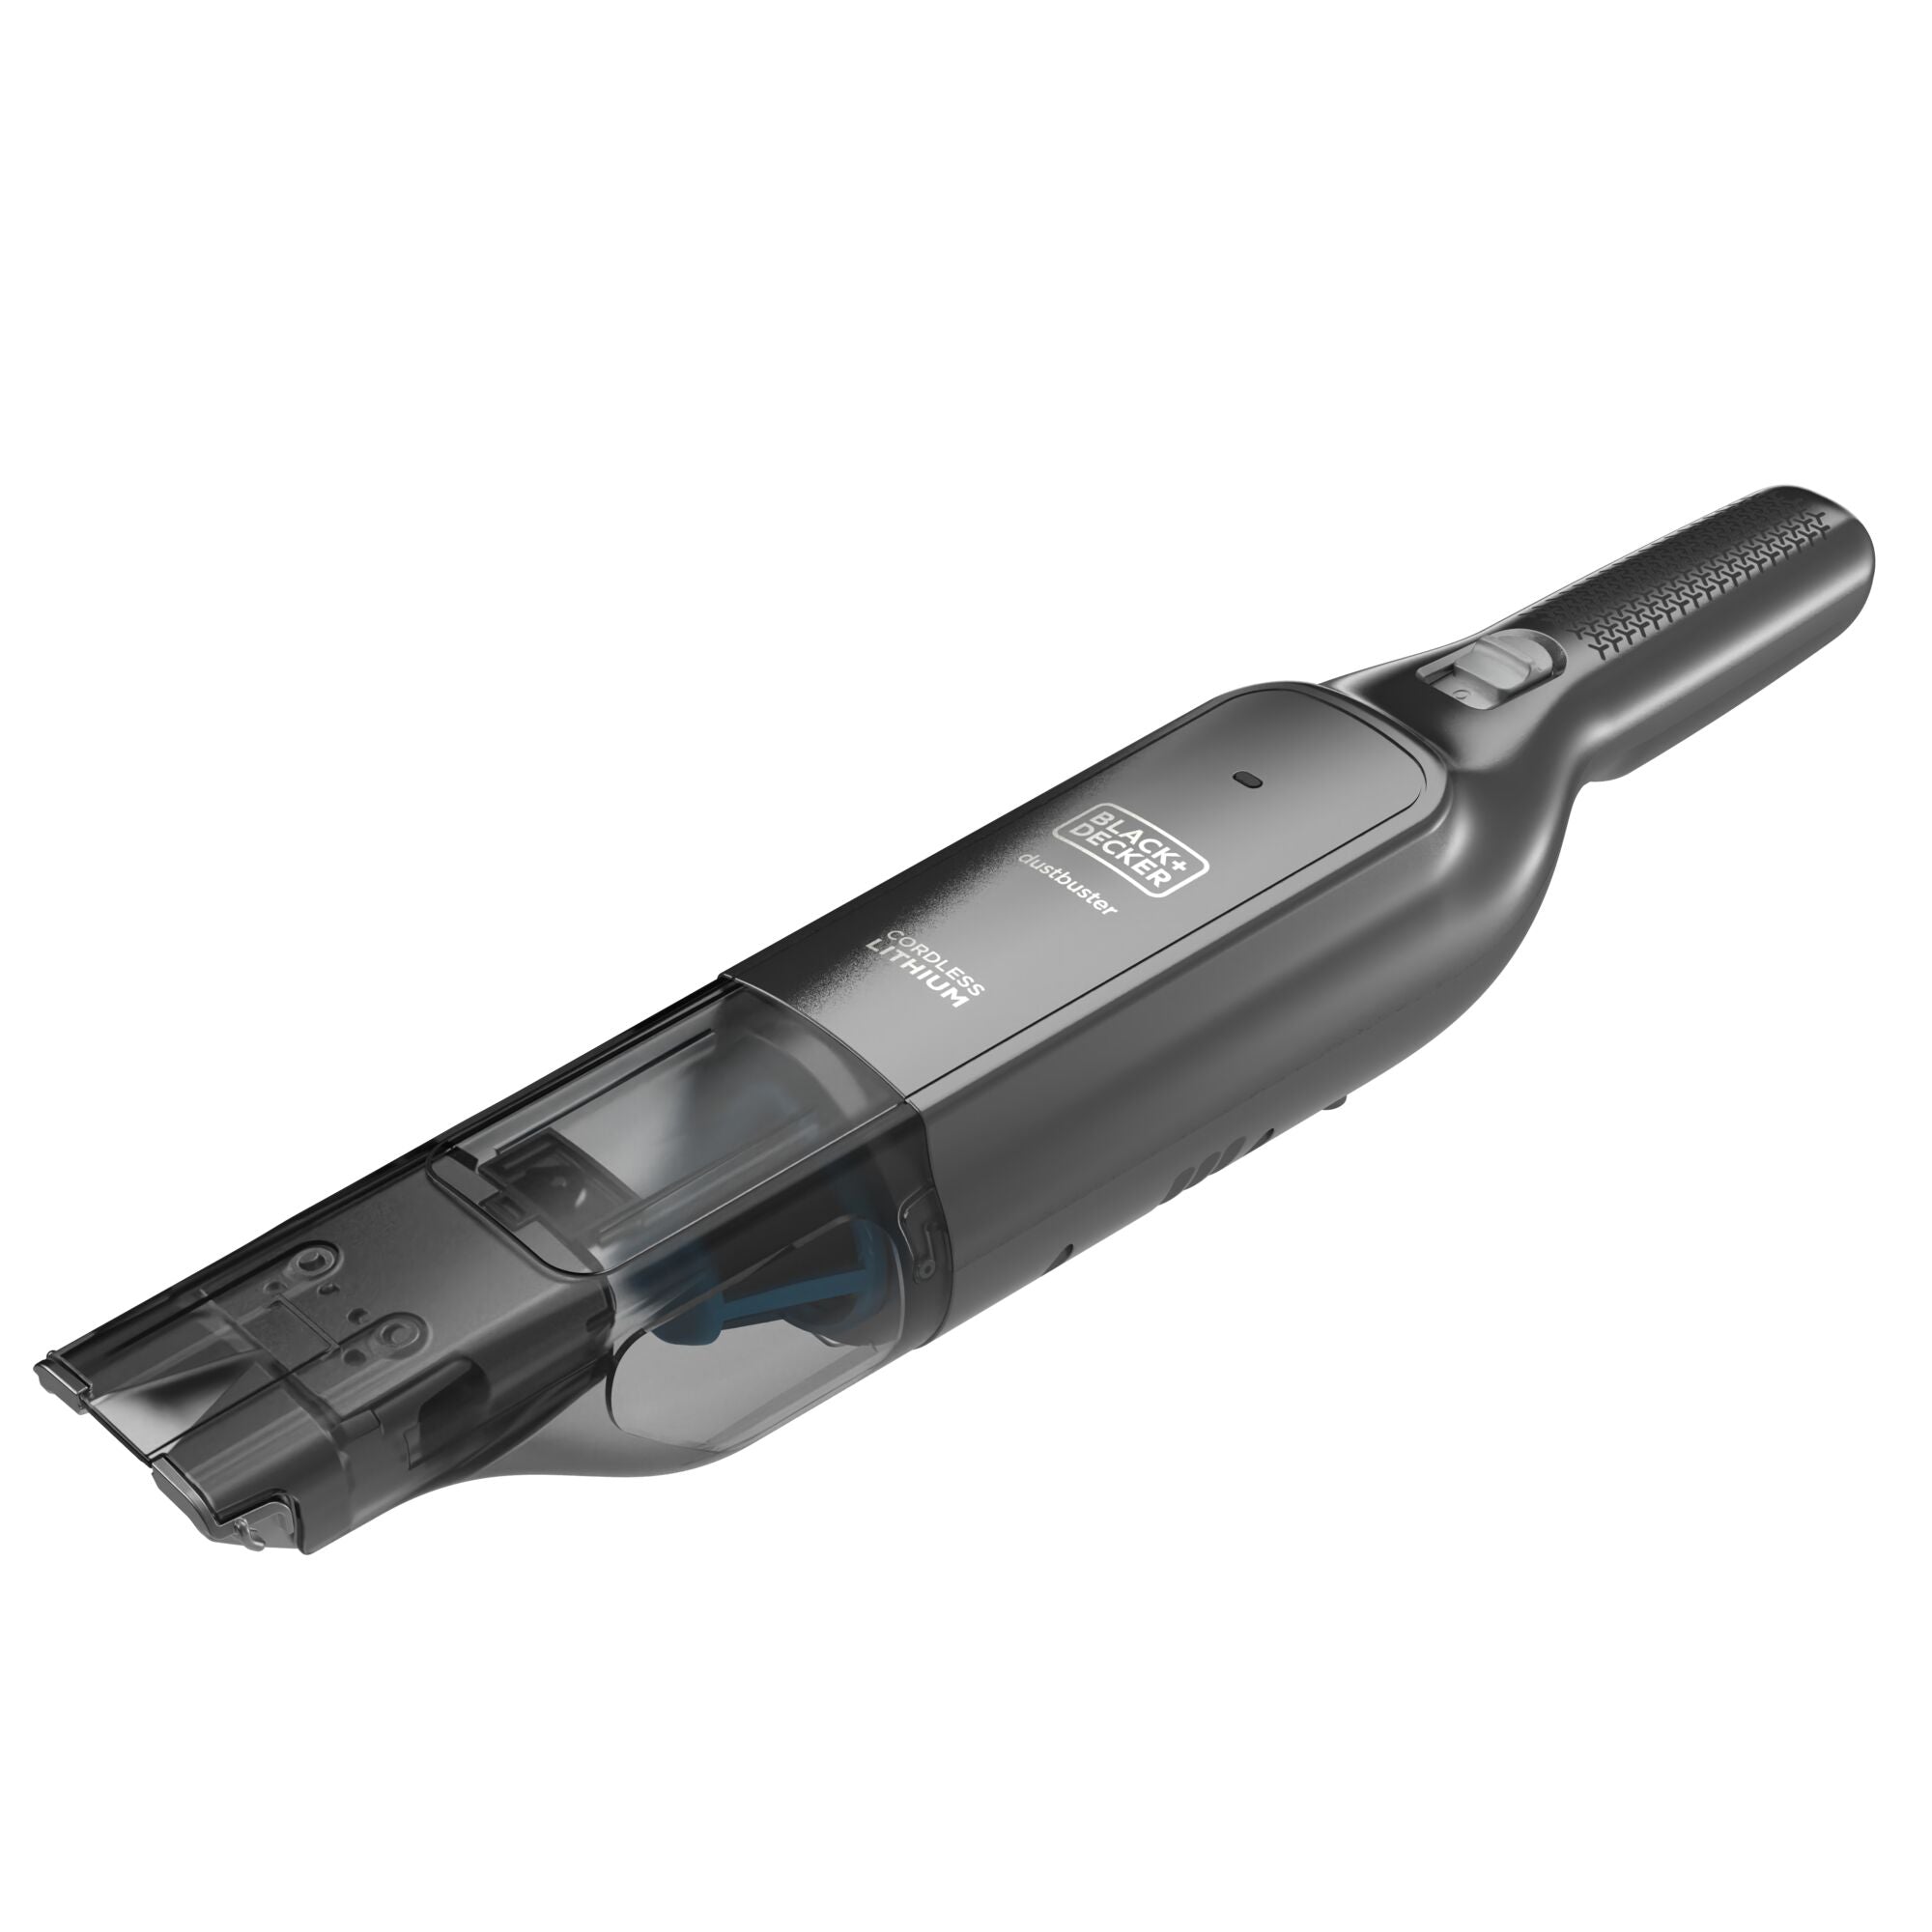 Black and Decker 12V Cordless Handheld Vacuum HHVK320J10 from